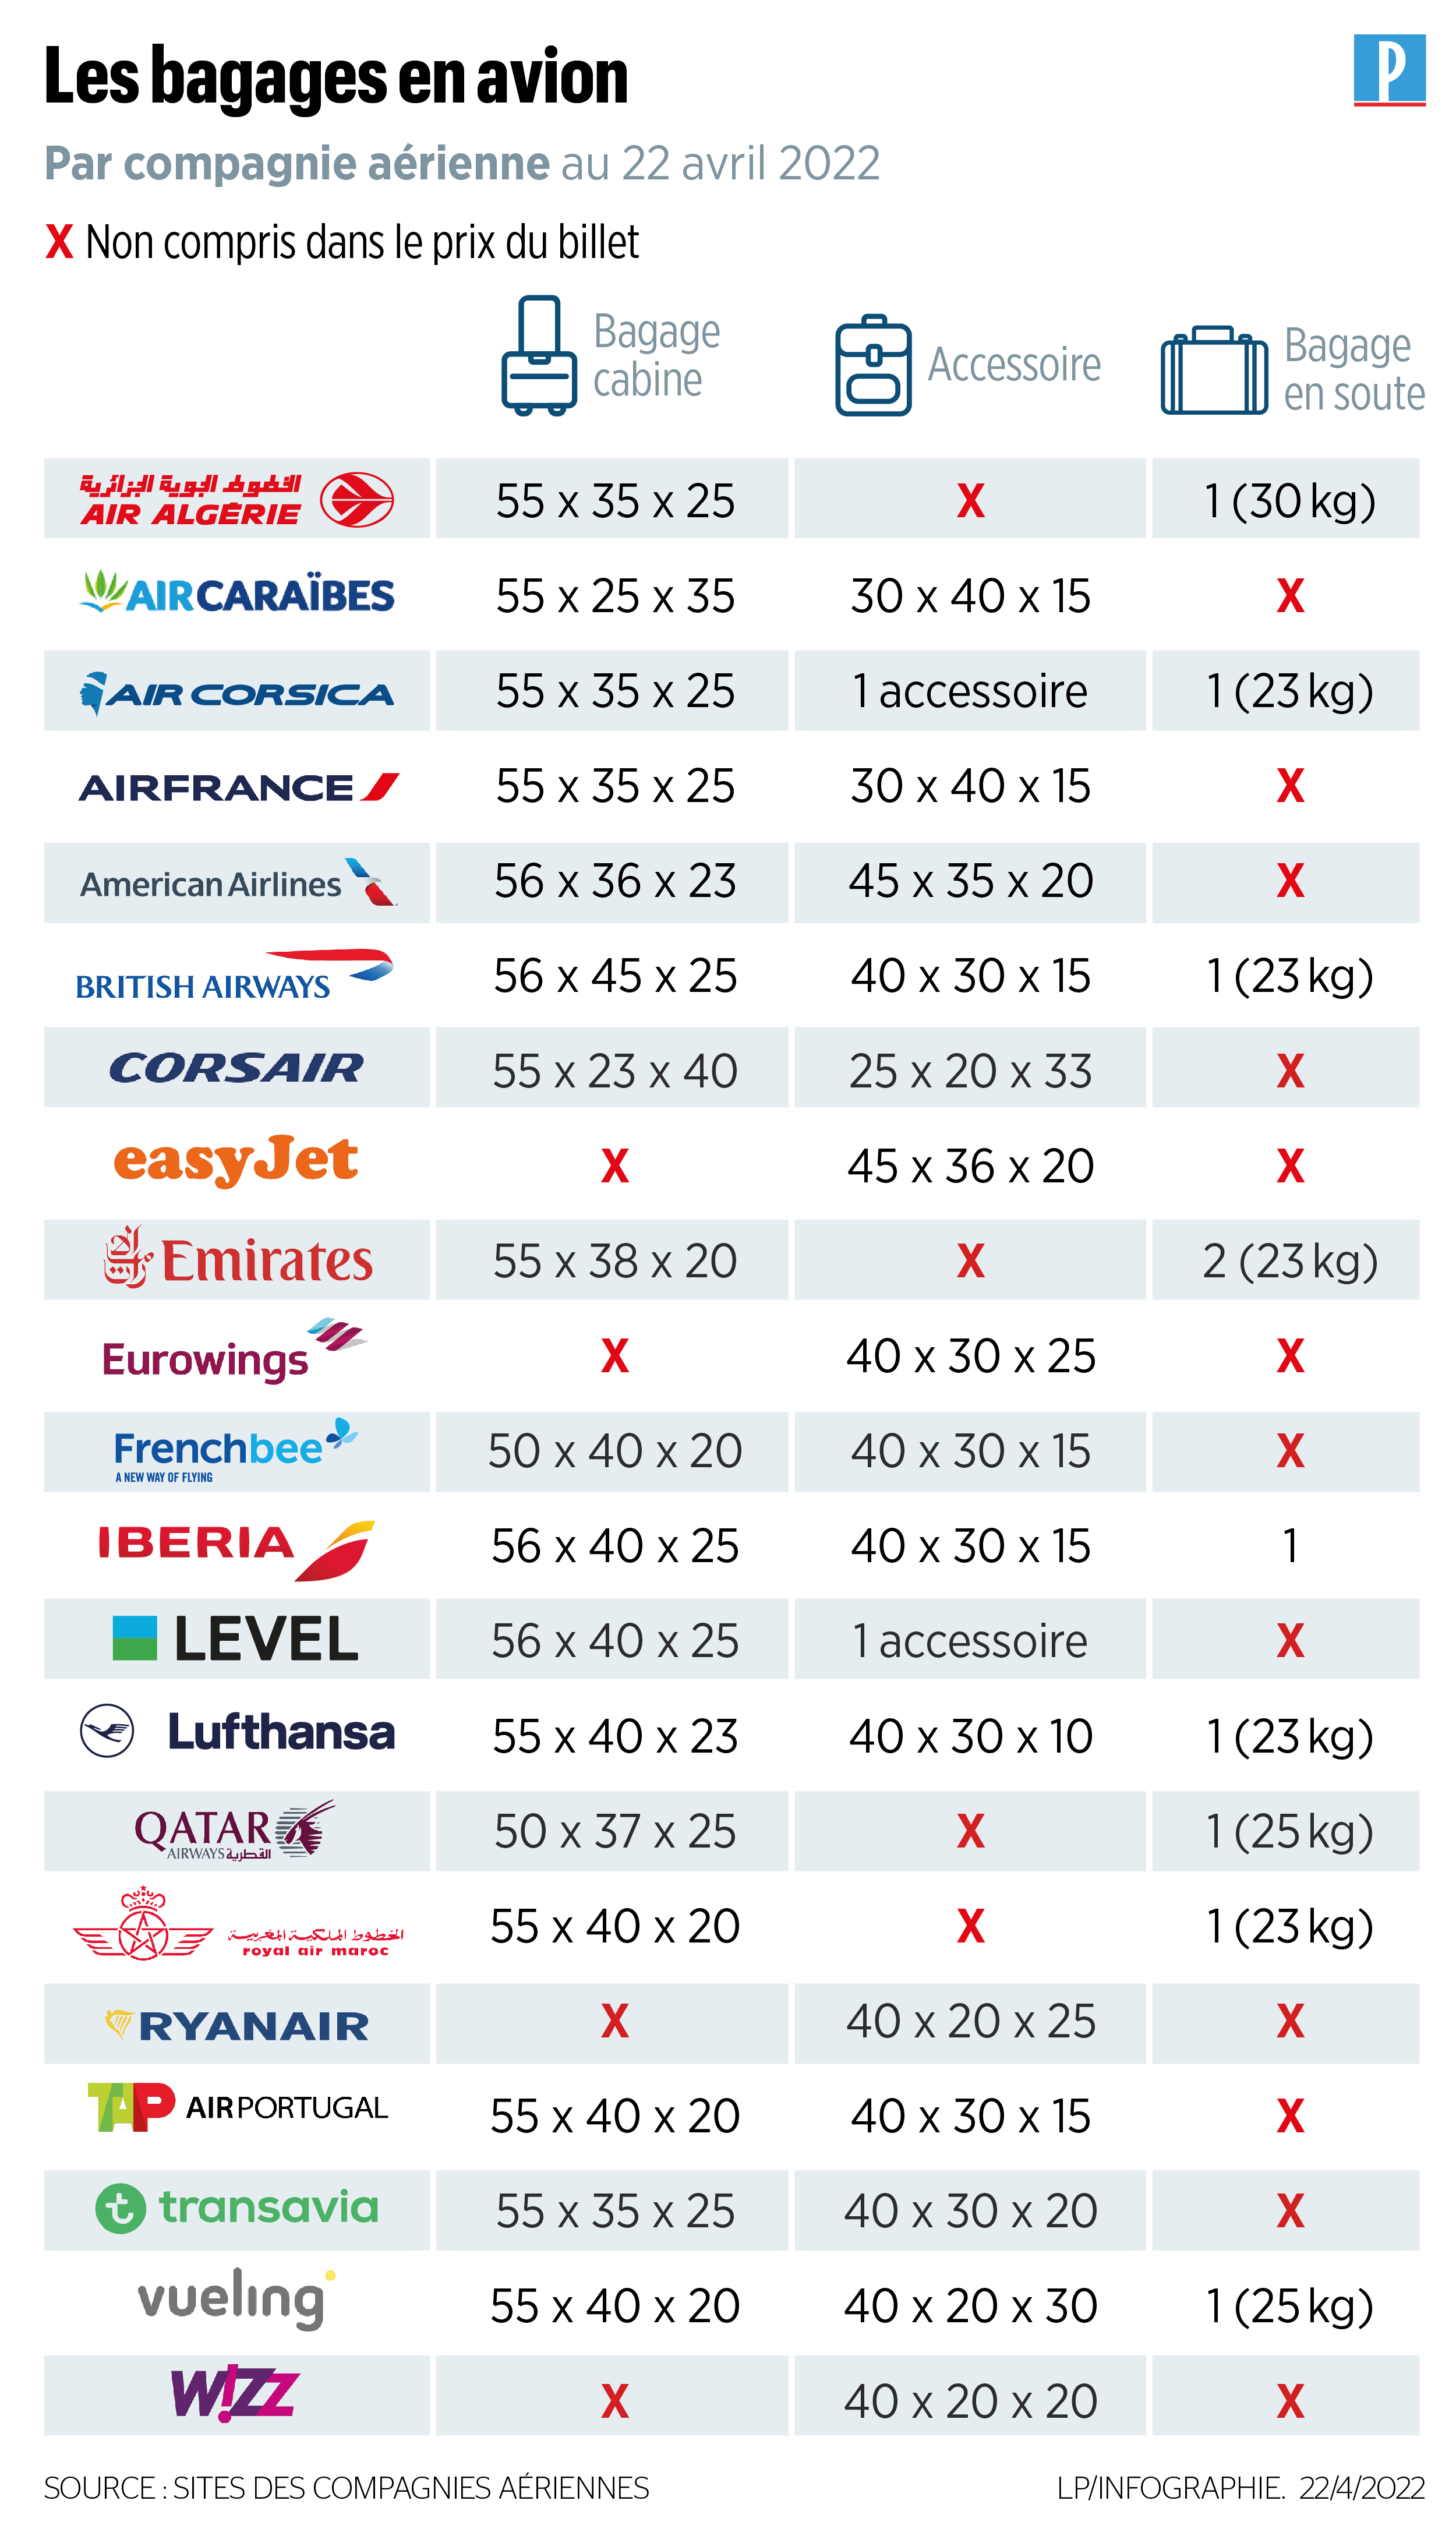 Compagnies aériennes, quelle taille de valise cabine choisir ?